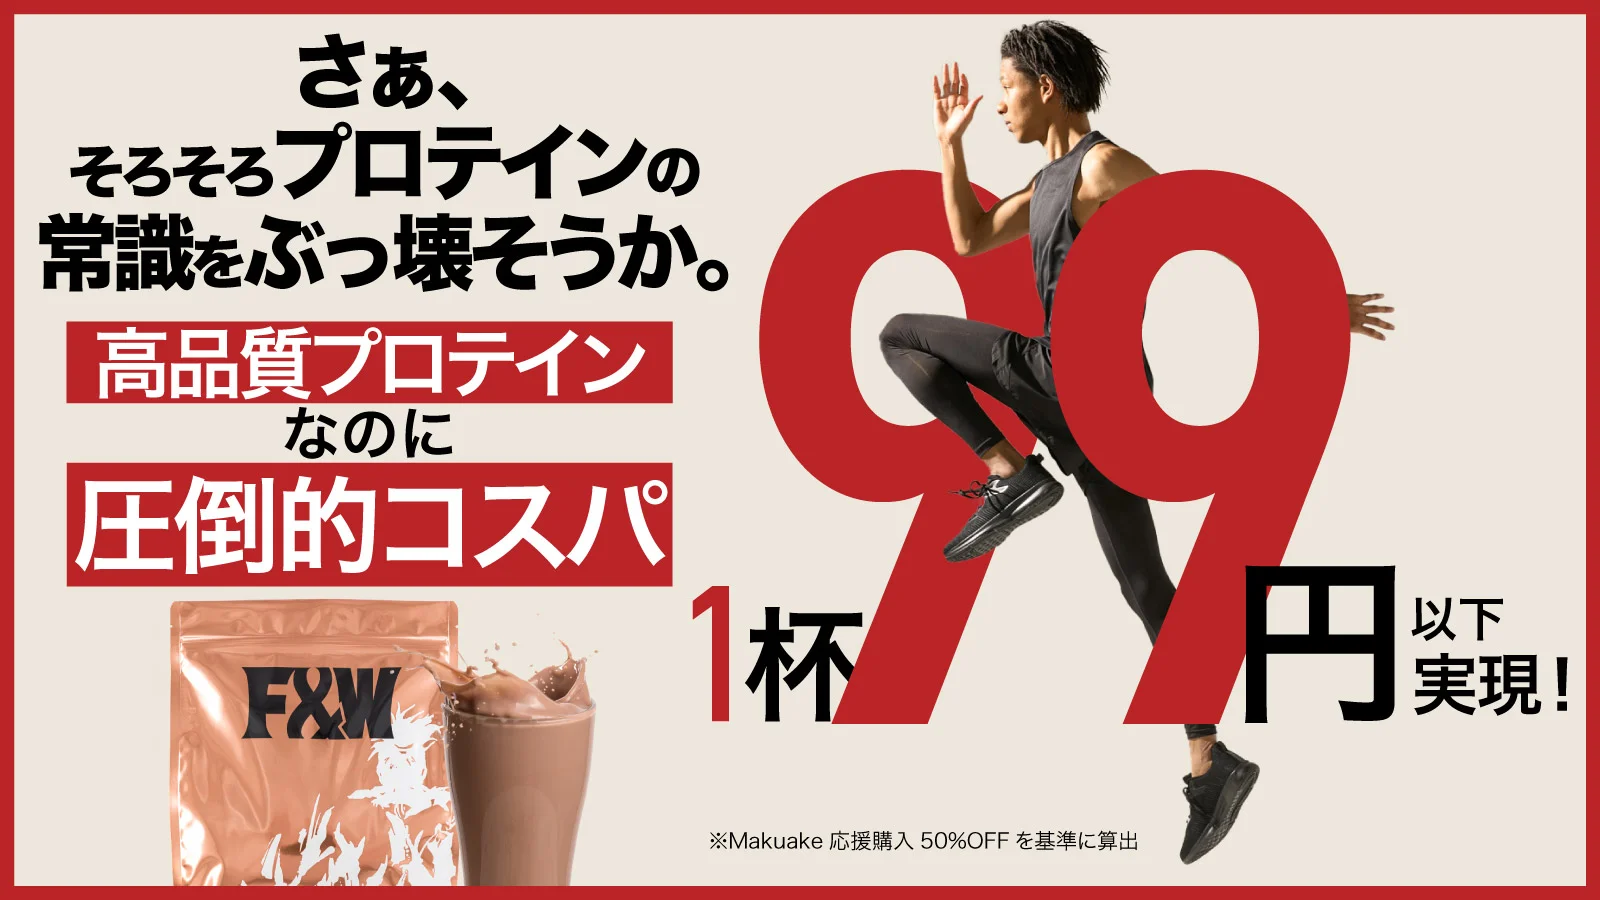 1杯99円以下、高コスパ×高配合プロテイン「F&W＋Gシリーズ」
　Makuakeでの先行予約販売を3月12日から開始